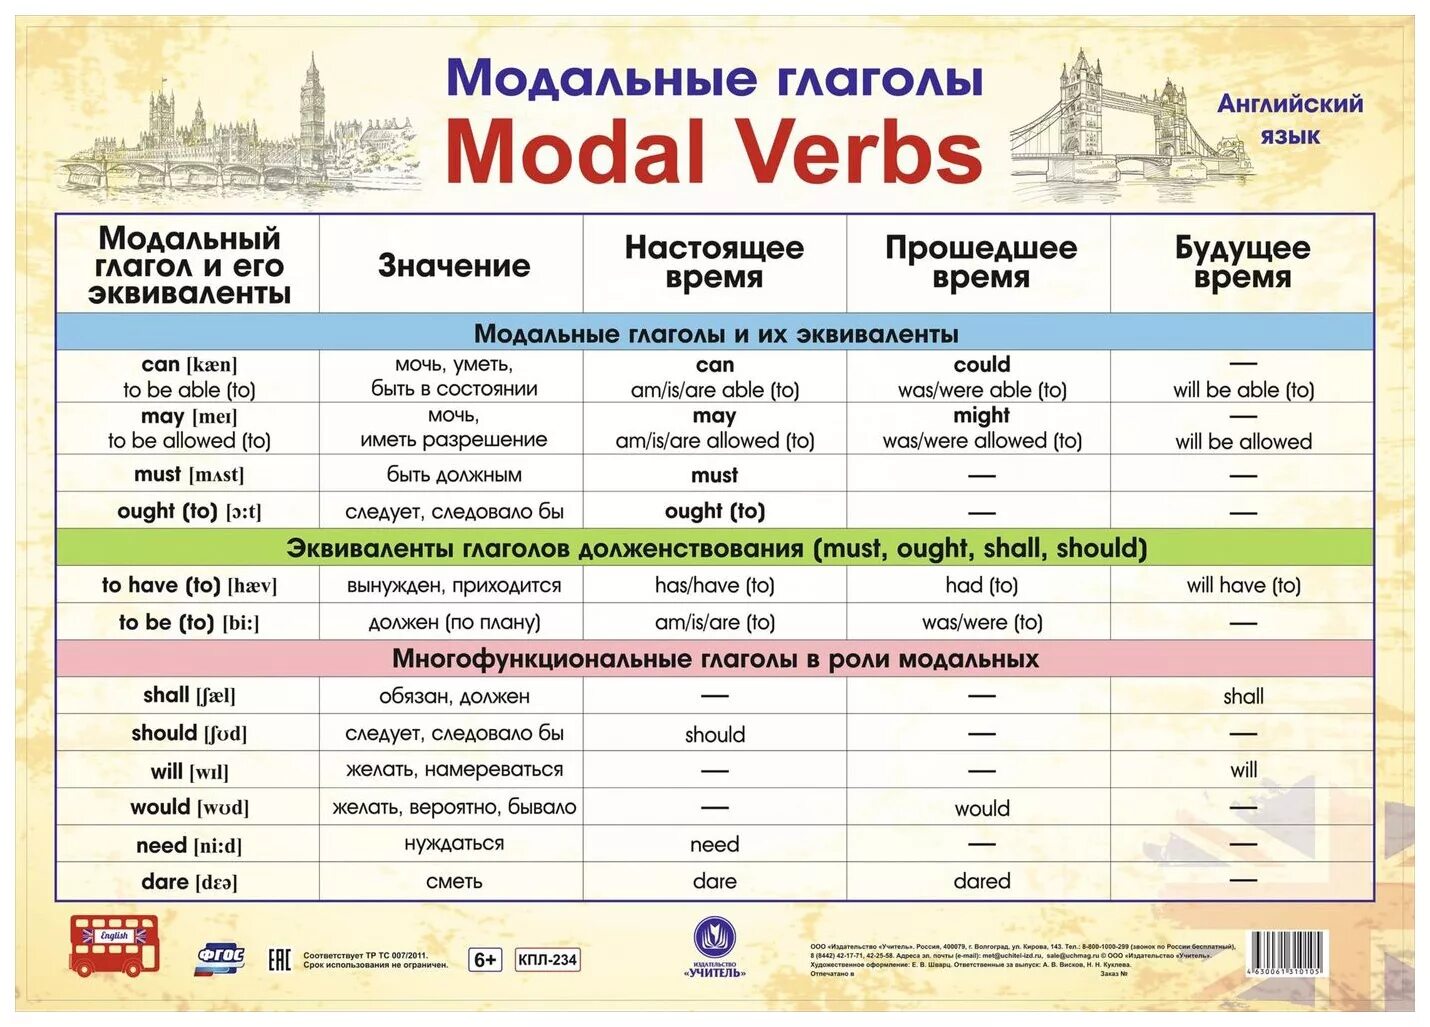 Модальные глаголы в английском языке таблица. Модальные глаголы англ яз таблица. Модальные гляголы в анг. Можальные гдаголы втанглийсуом языке.